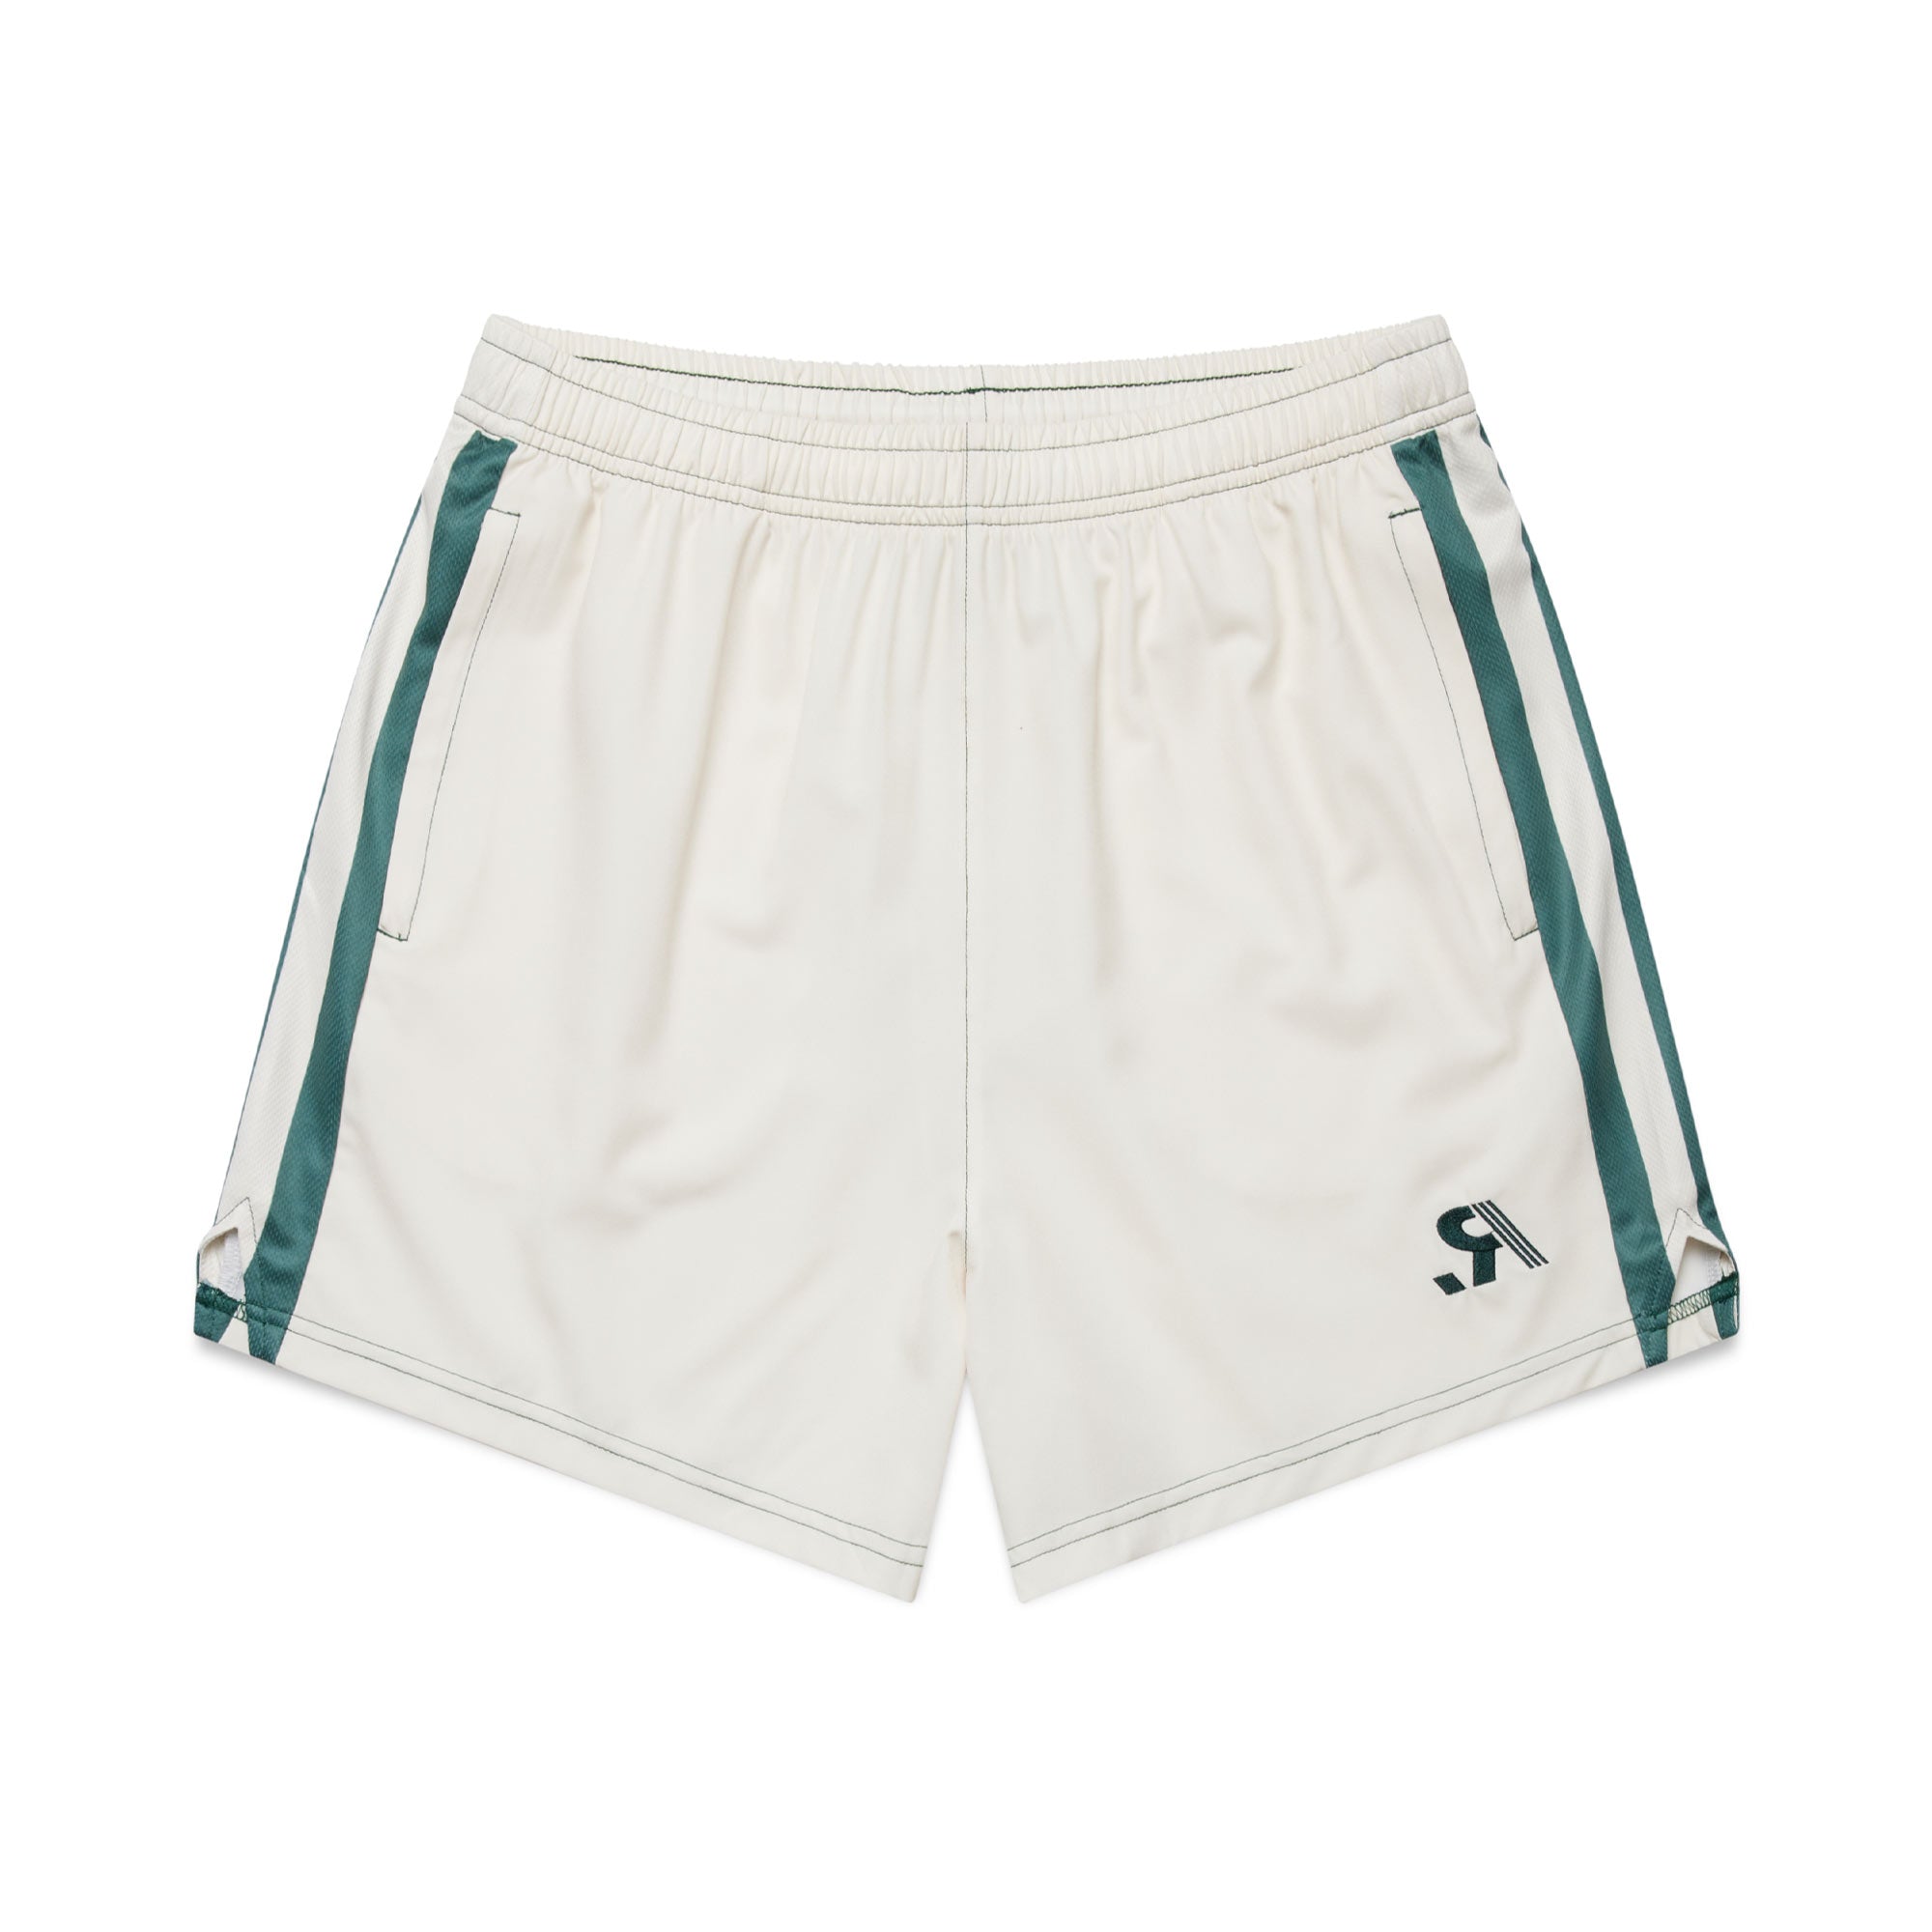 R.SPORT Tennis Shorts - Cream/Green